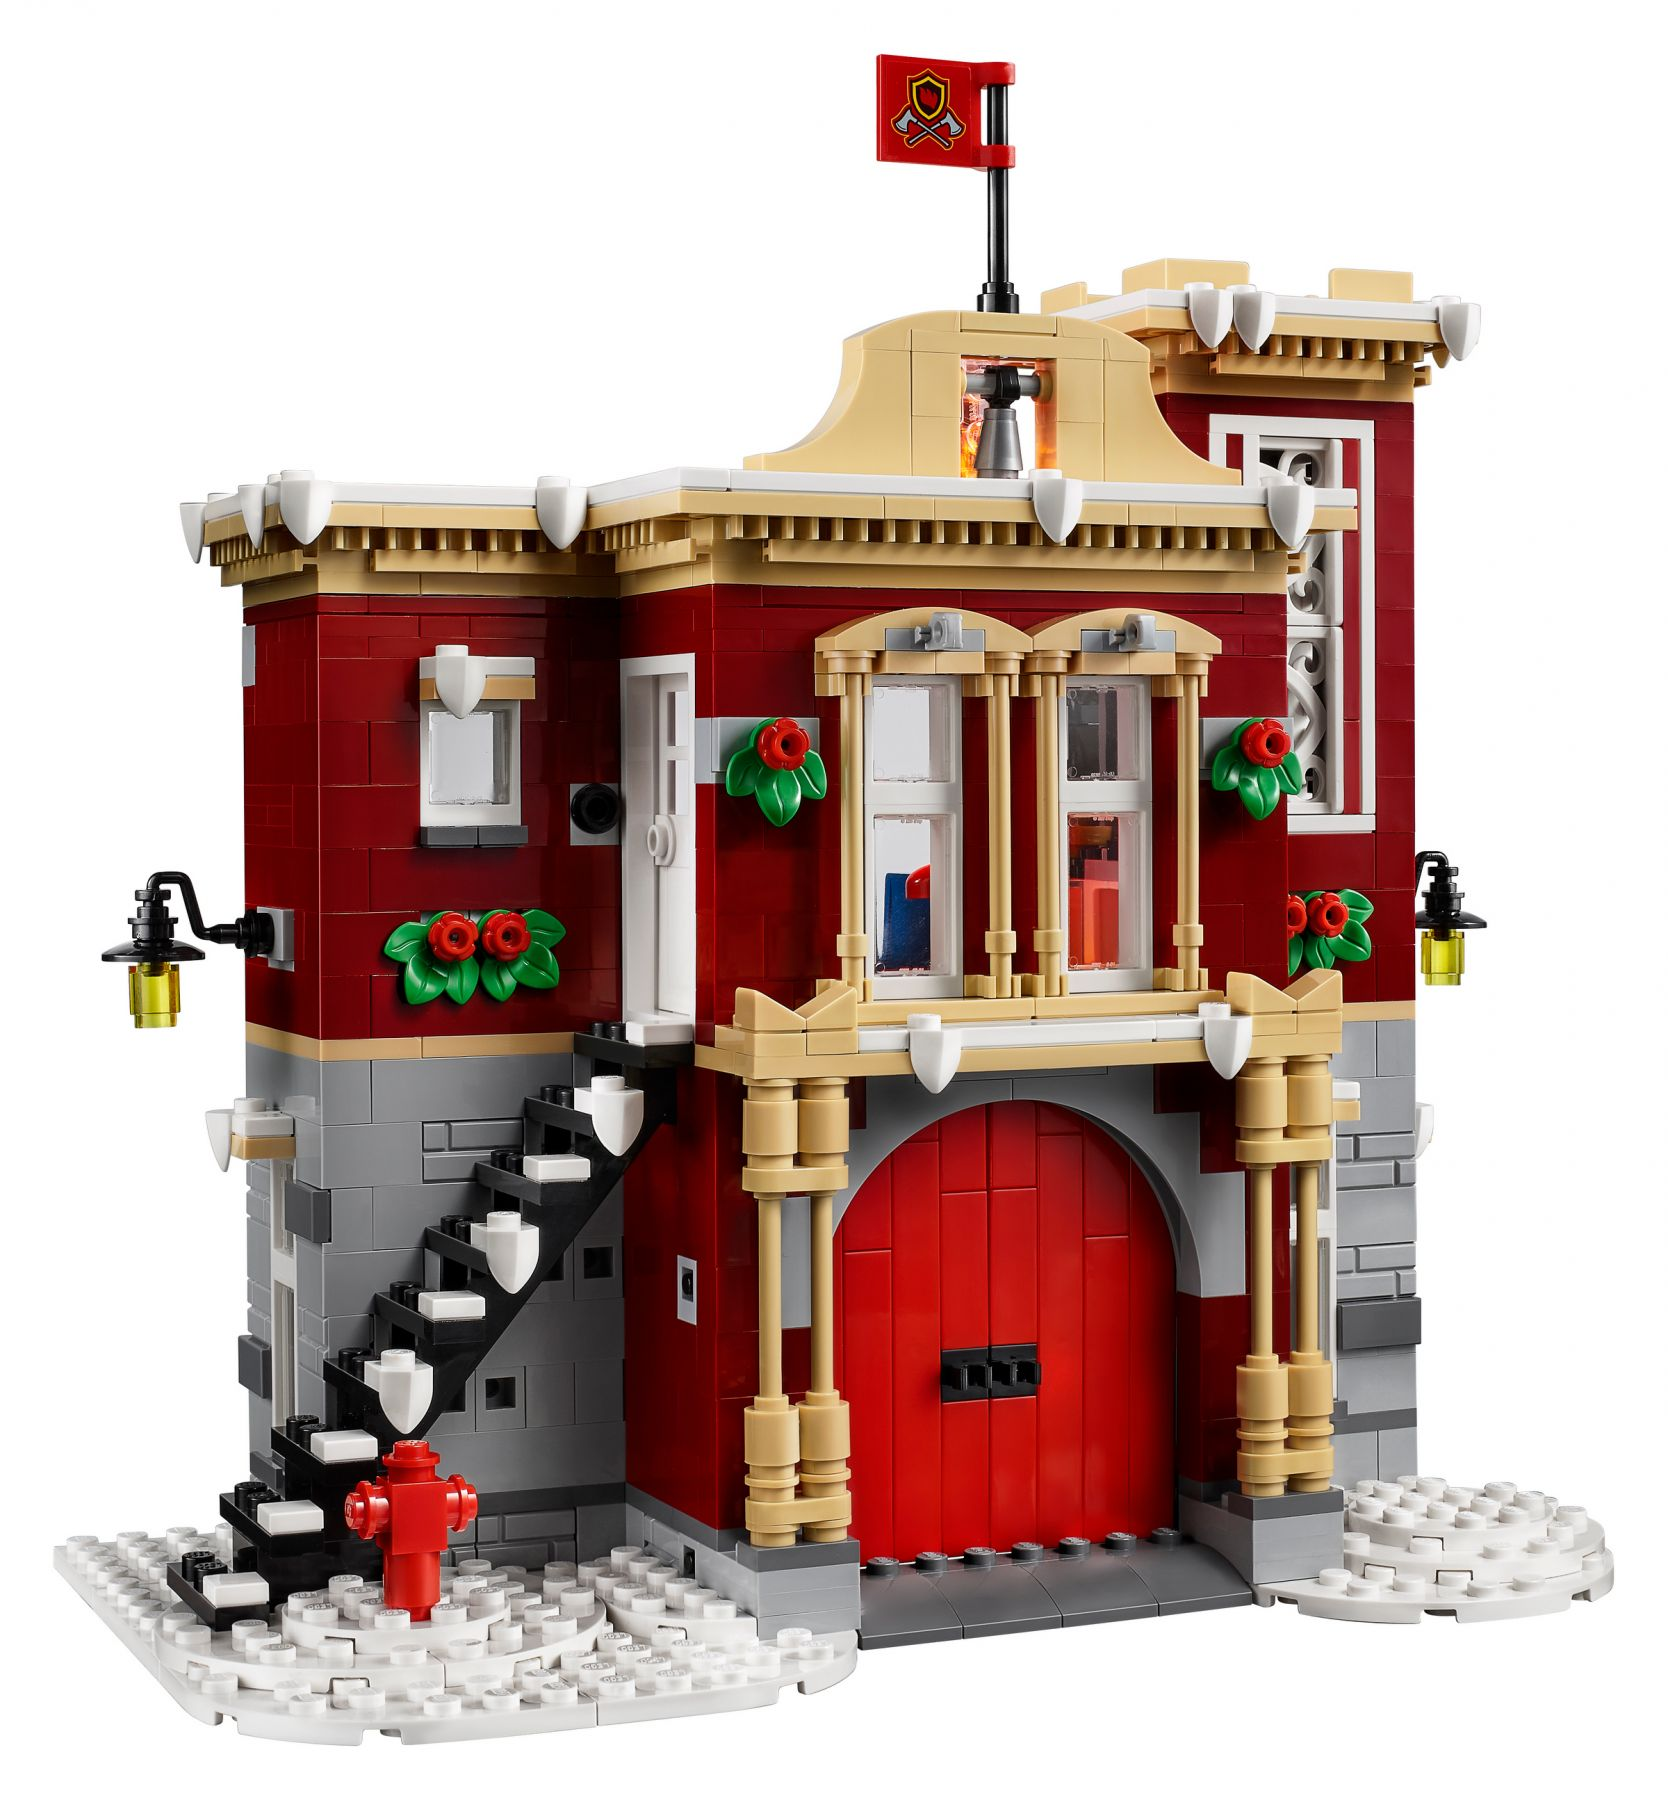 LEGO Creator Expert 10263 Winterliche Bausatz Feuerwehrstation